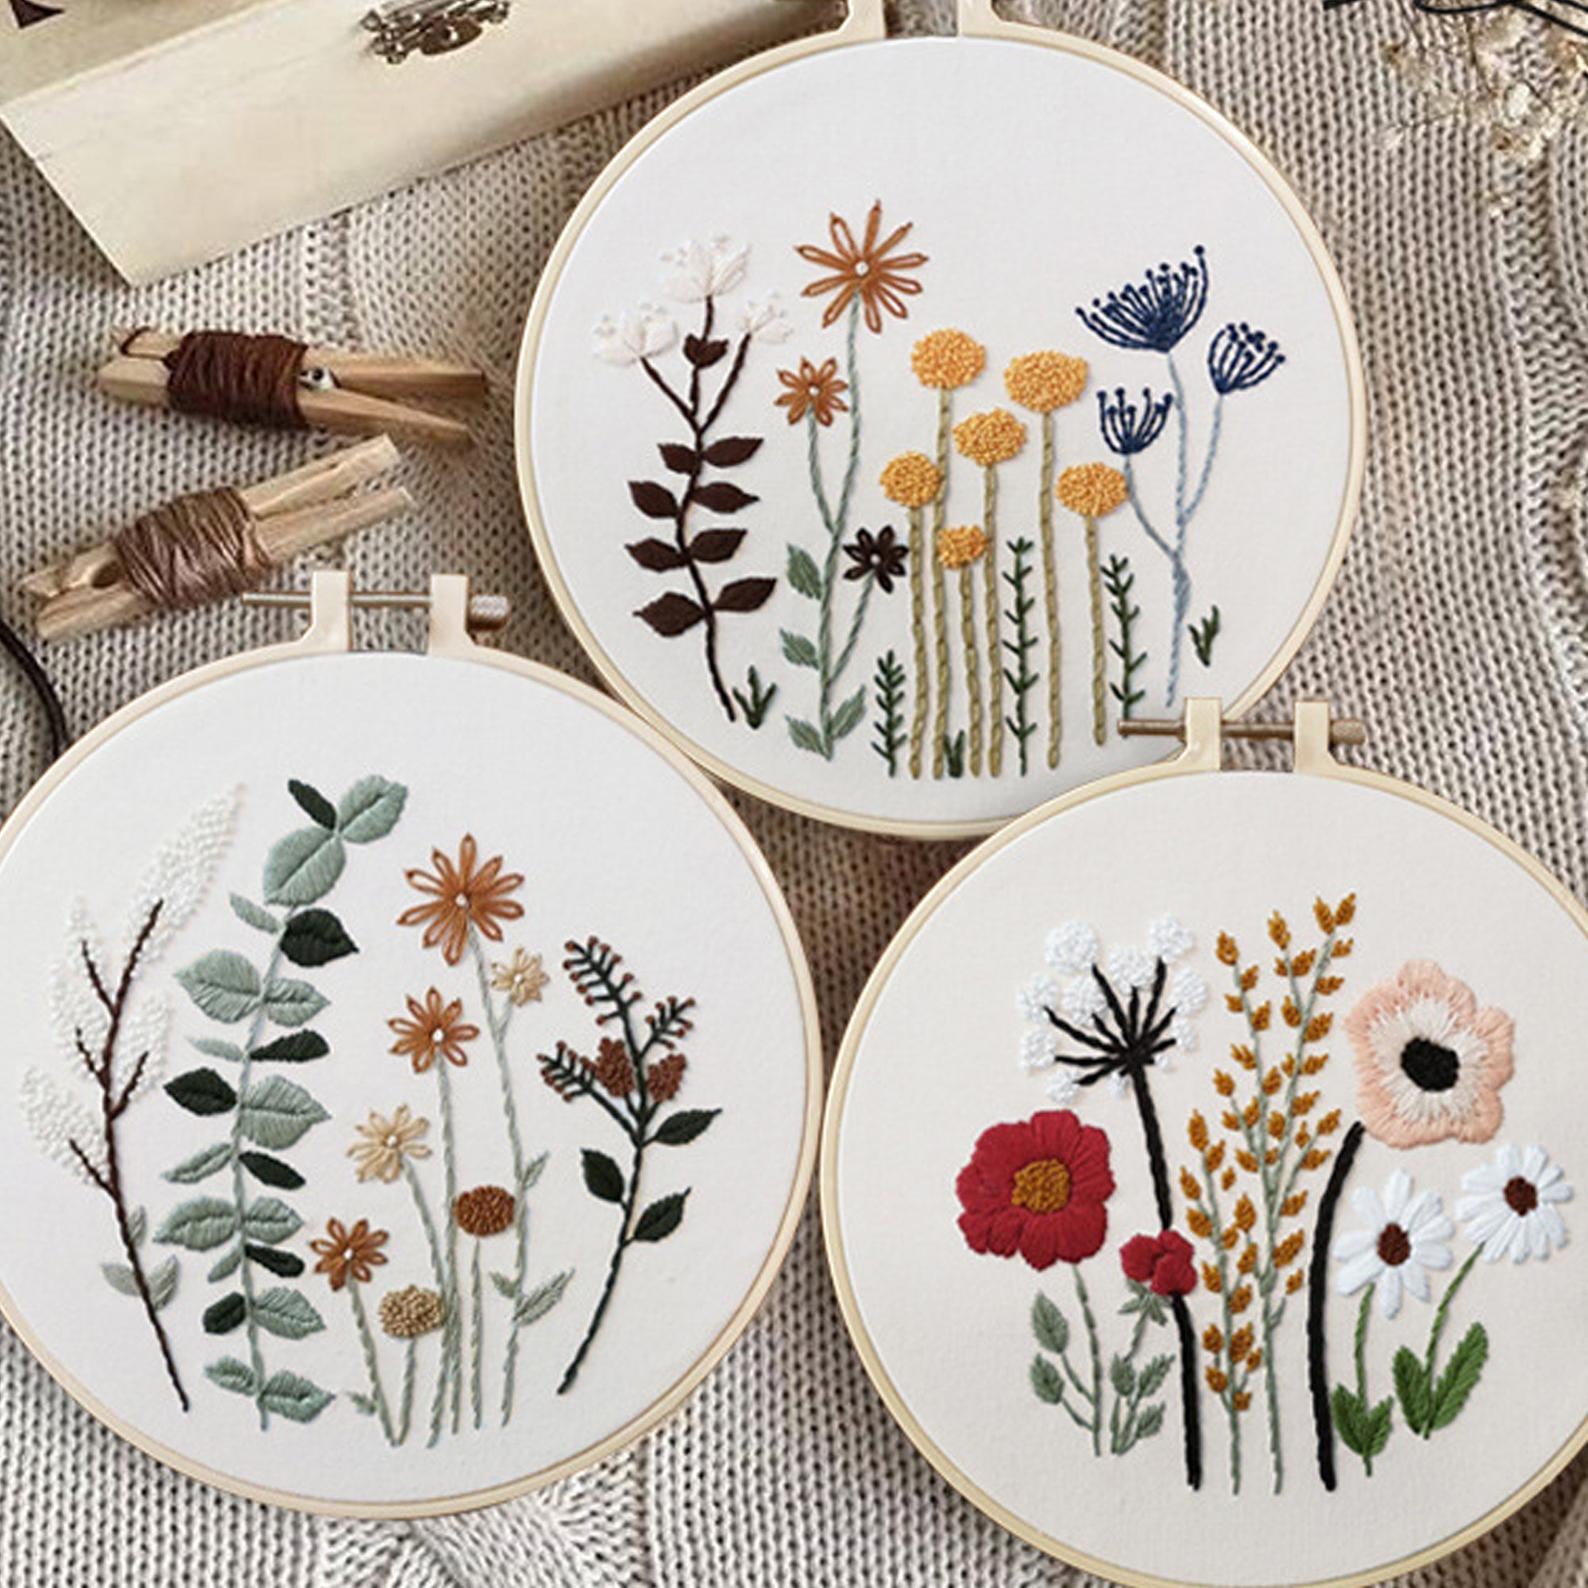 Embroidery Kit Flowers Beginner Embroidery Kit Modern Flower